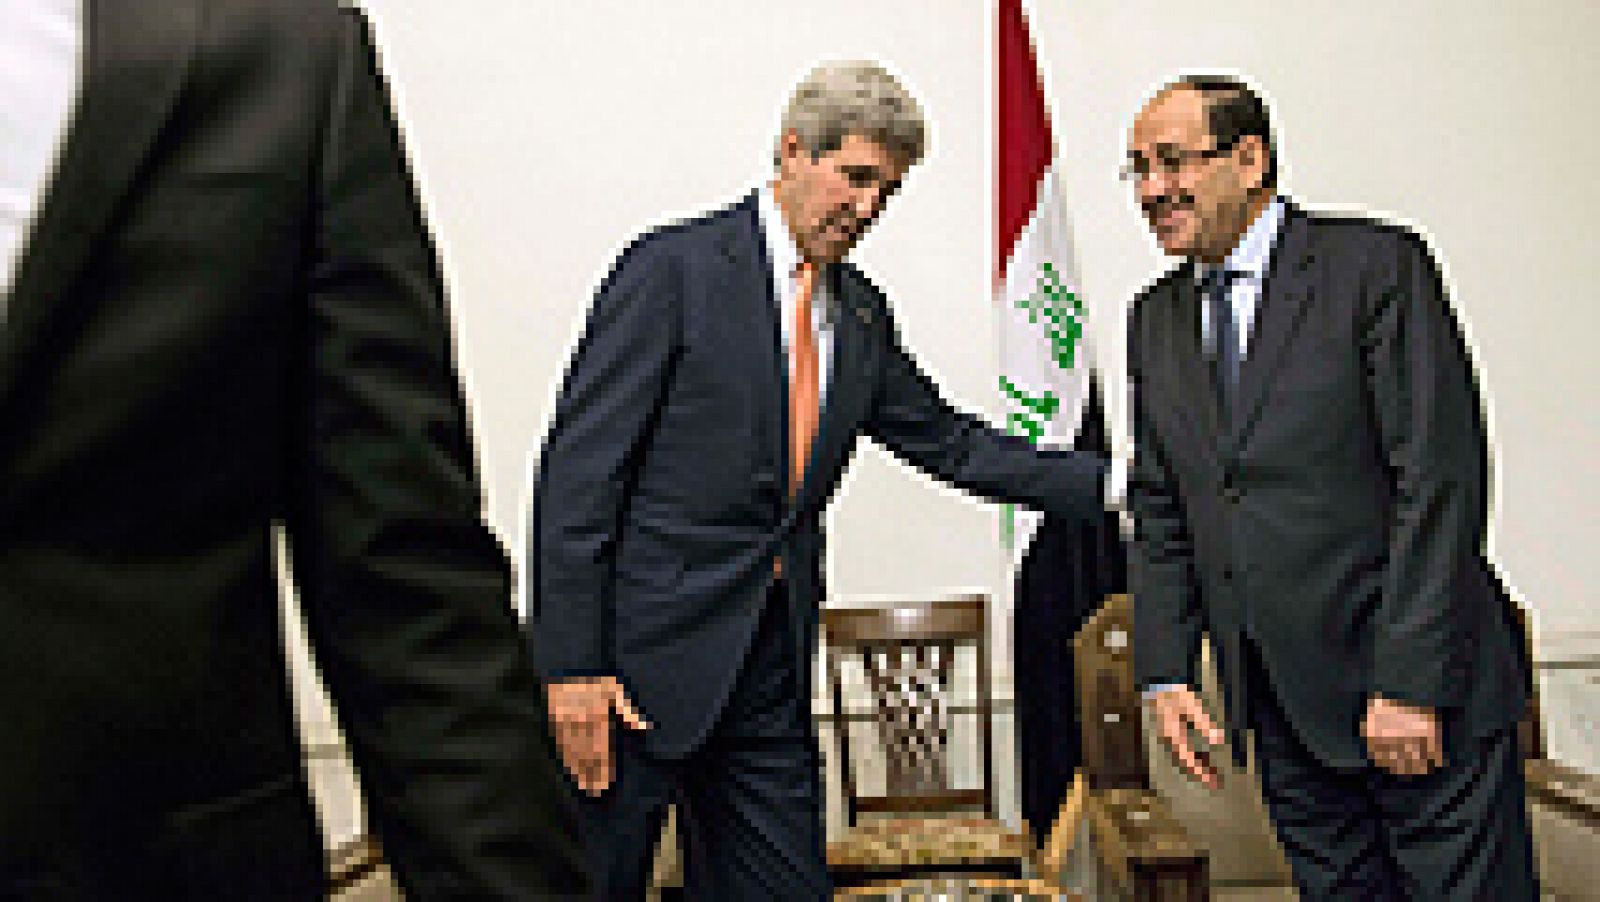  El secretario de Estado de EEUU, John Kerry, instó hoy en Bagdad a la formación de un Gobierno que represente a todos los iraquíes para frenar el avance de los insurgentes, en plena lucha contra las fuerzas gubernamentales. En una visita sorpresa a la capital iraquí, Kerry analizó con el primer ministro del país, Nuri al Maliki, el control rebelde de algunas provincias y el proceso de formación del nuevo Ejecutivo, tras las elecciones legislativas del pasado 30 de abril 